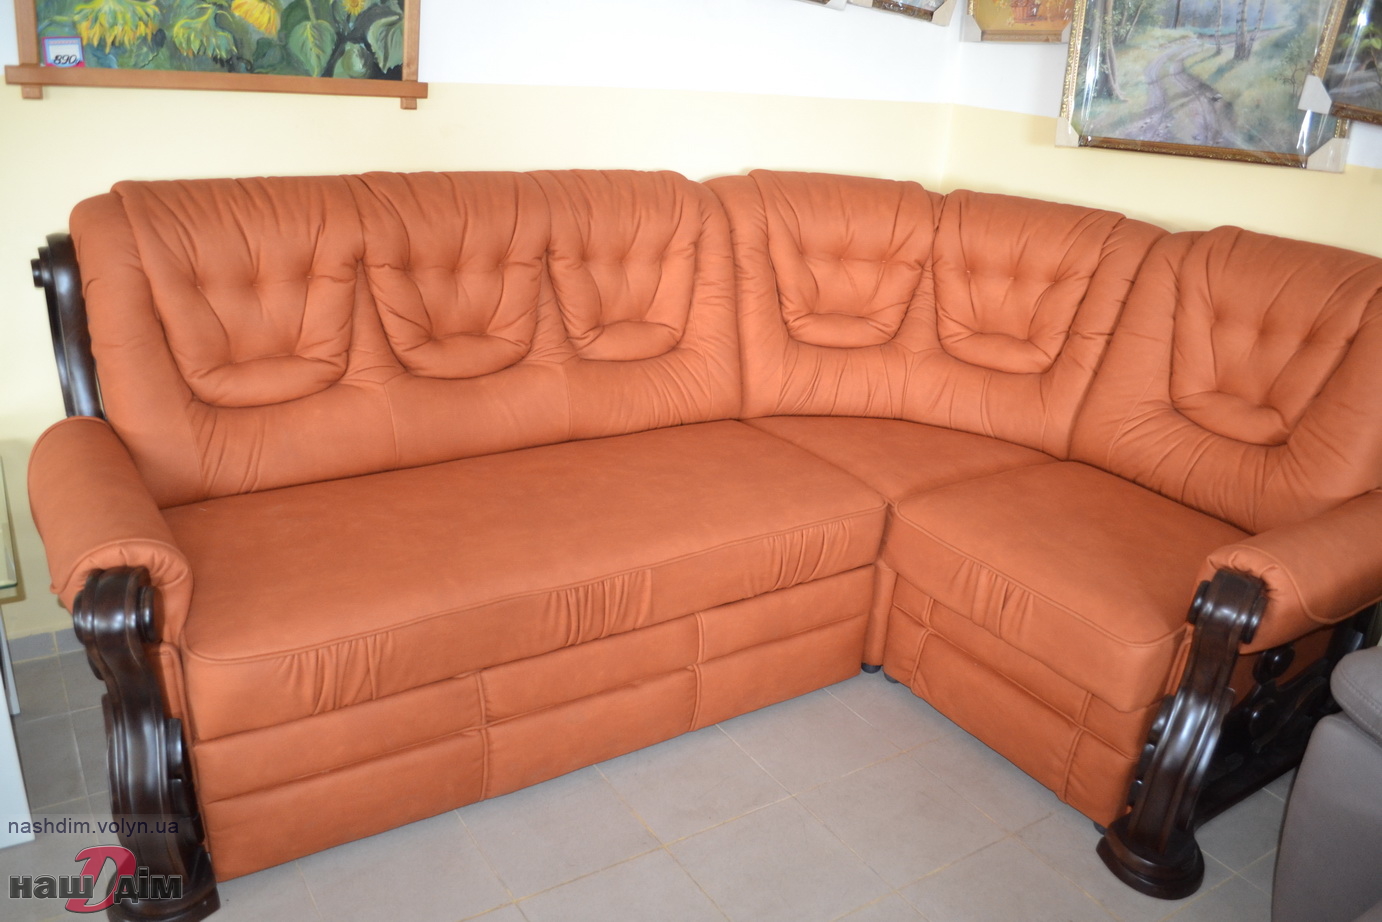 Річмонд кутовий диван від Даніро ID461-1 Фотографія з вітрини магазину